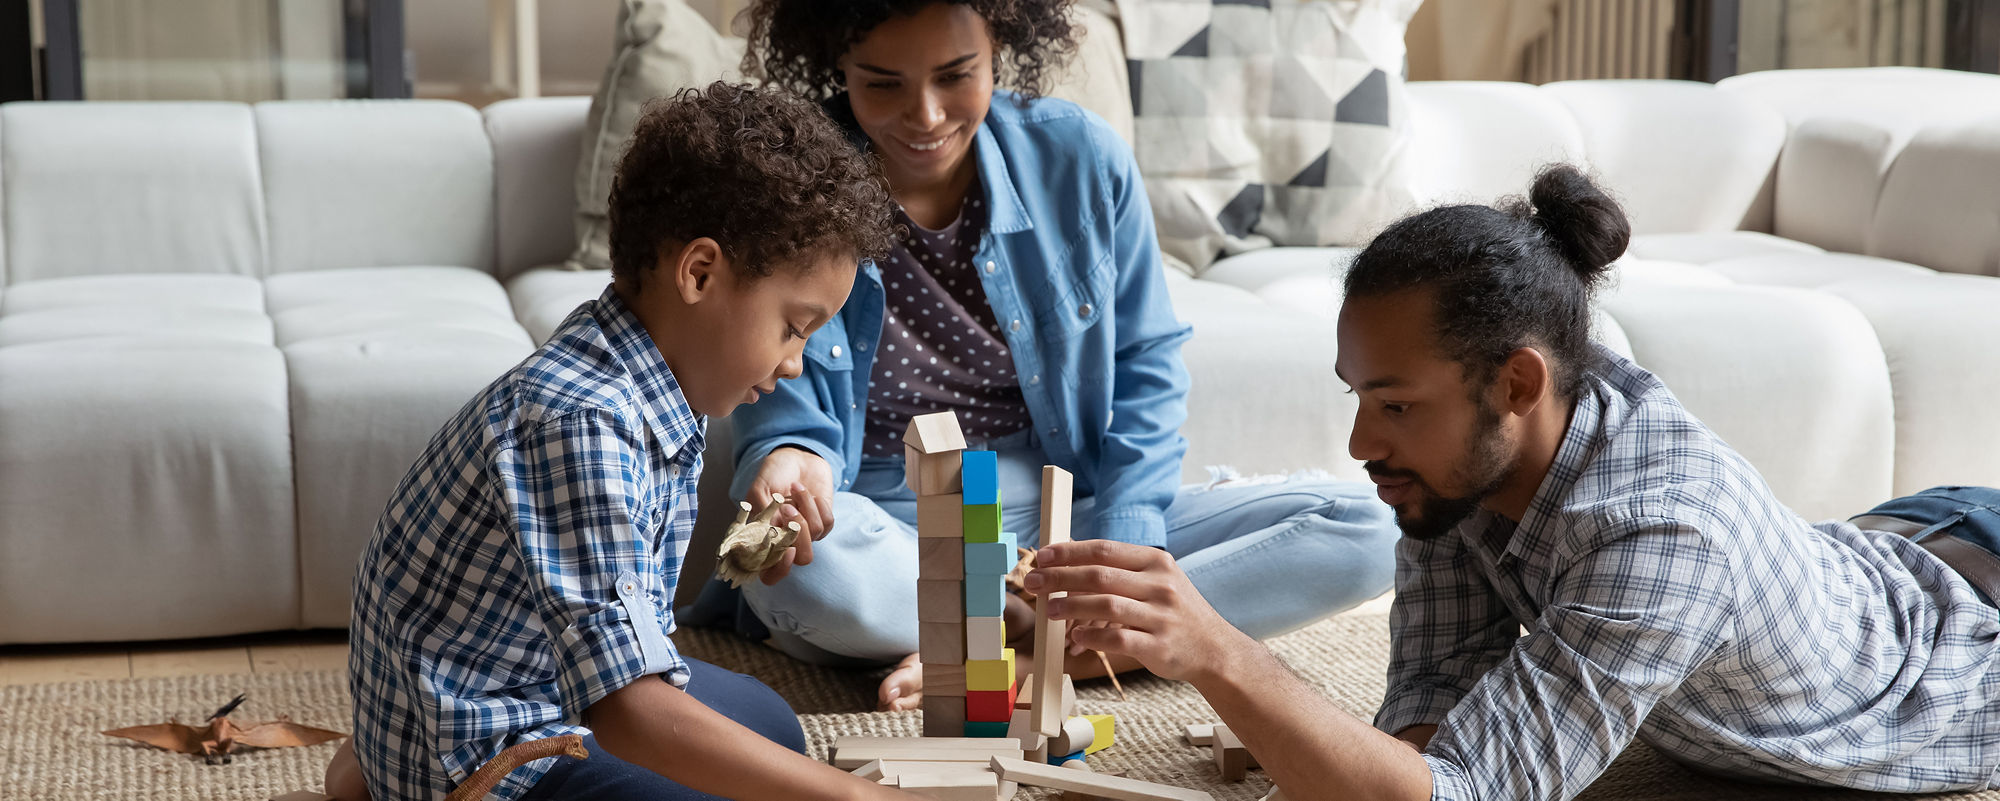 Kochający afroamerykańscy rodzice bawią się z małym synkiem drewnianymi zabawkami w salonie.